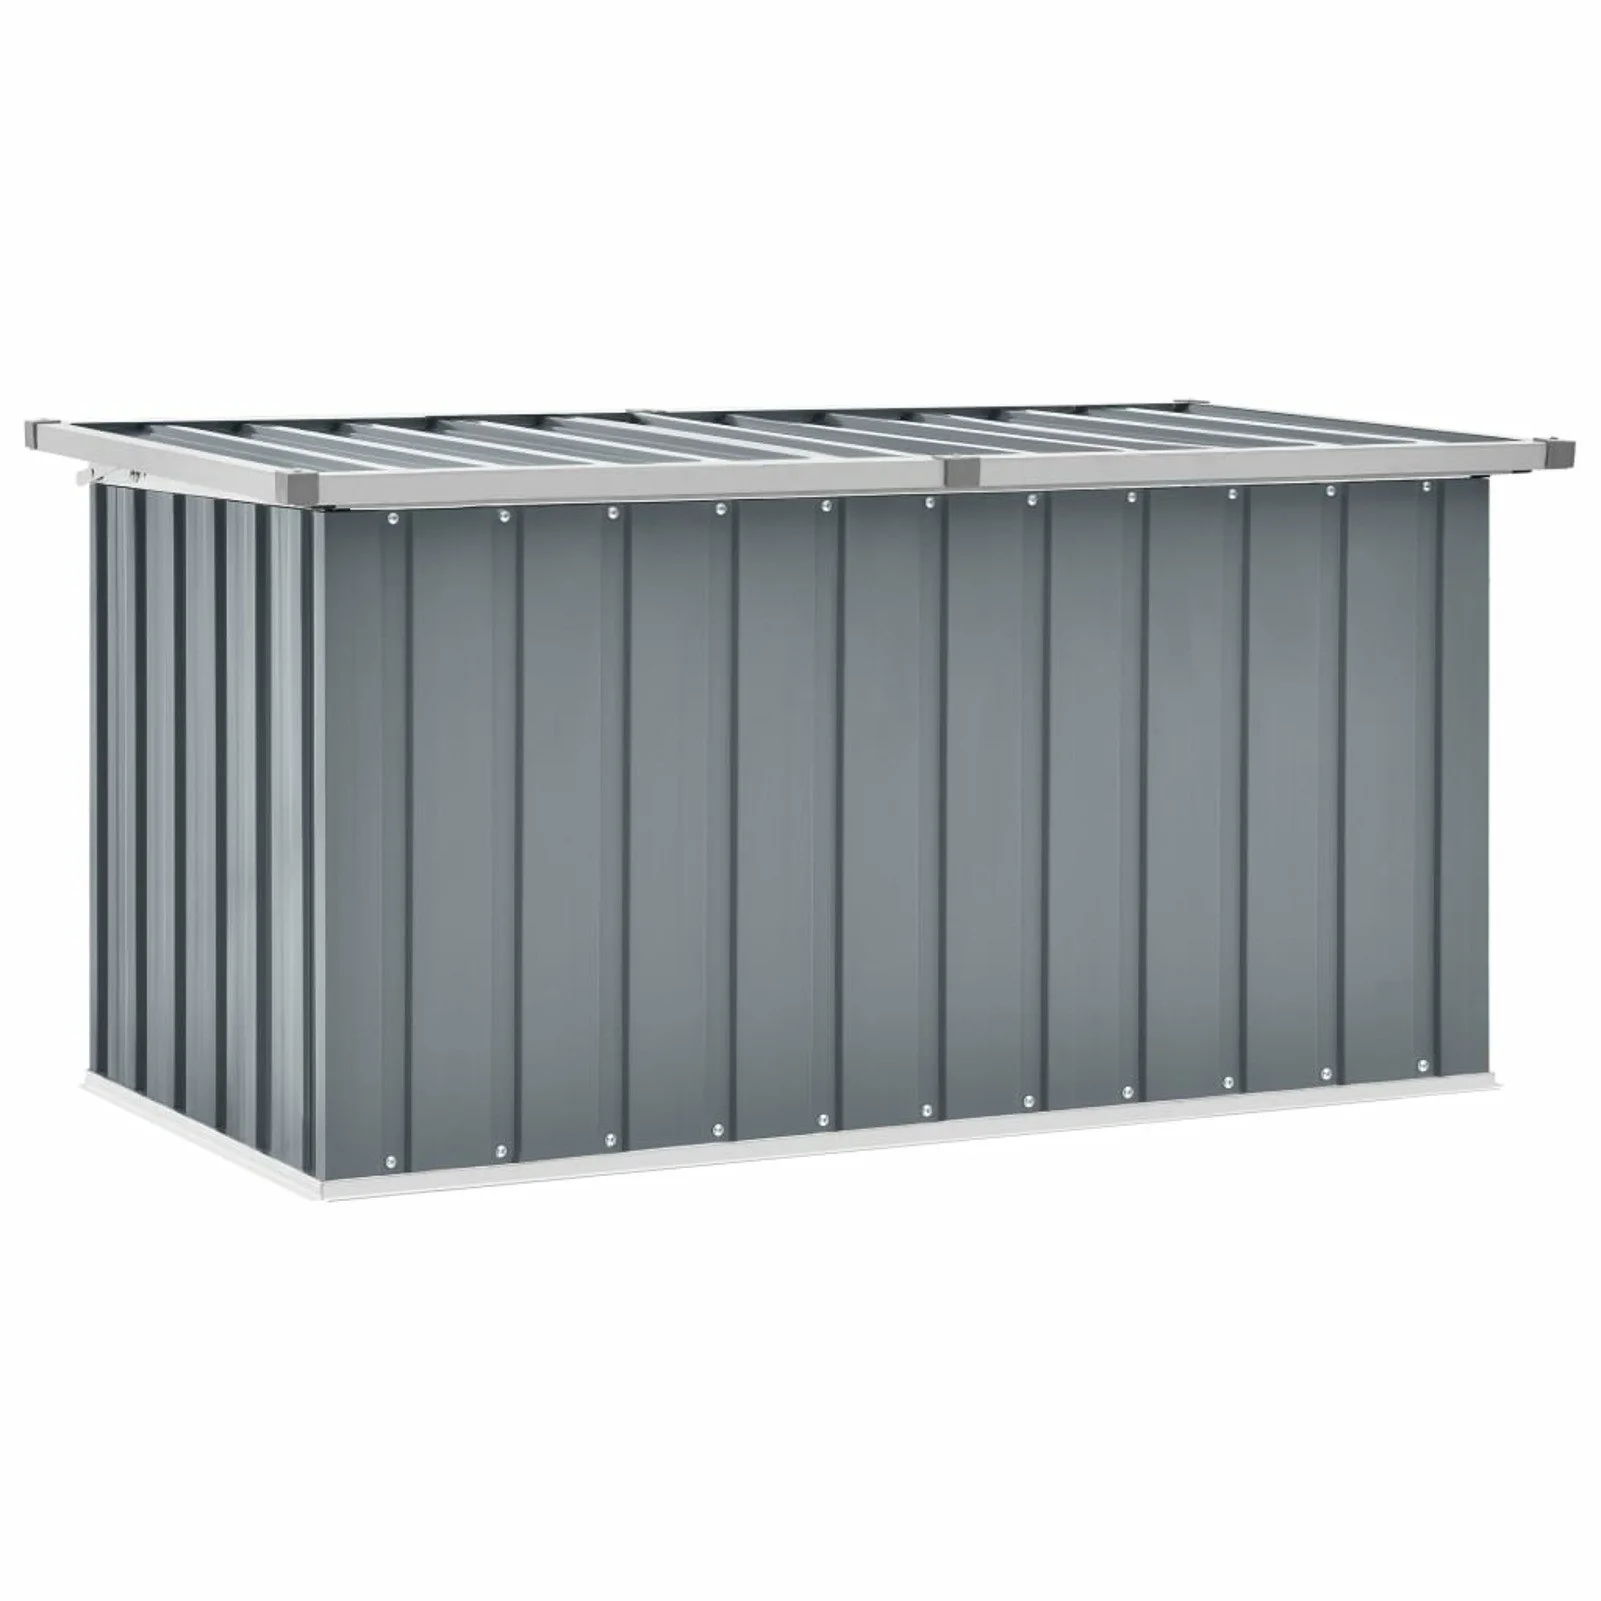 

Garden Storage Box Gray 50.8"x26.4"x25.6"